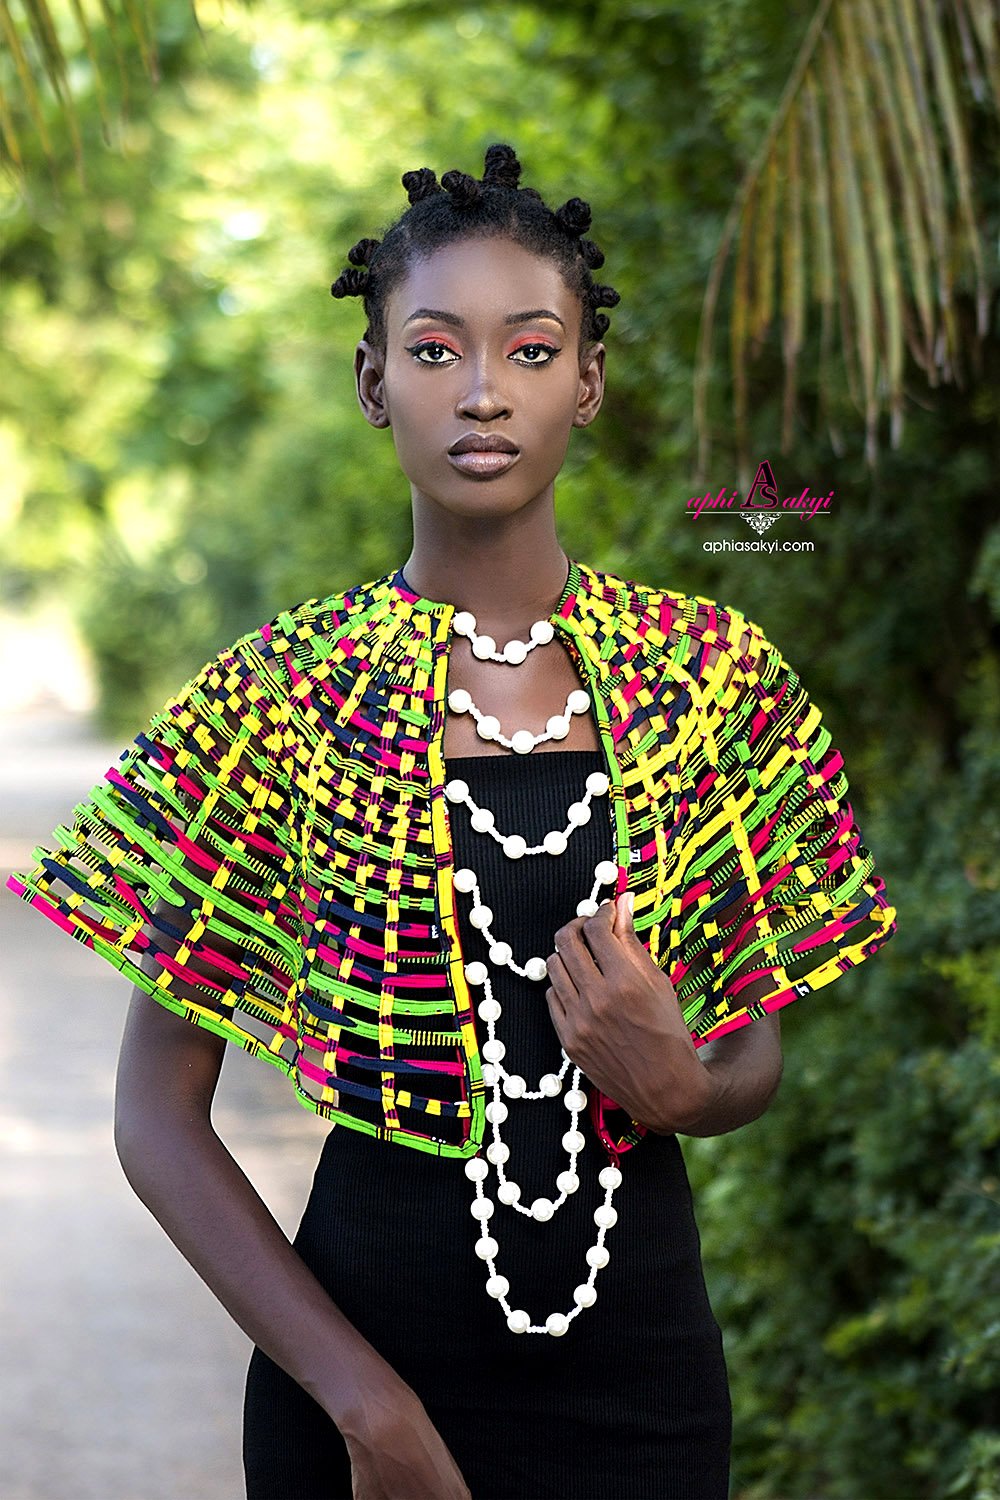 90 негритянки. Африканский костюм. Африканский стиль в одежде. Одежда африканцев. Костюм африканской женщины.